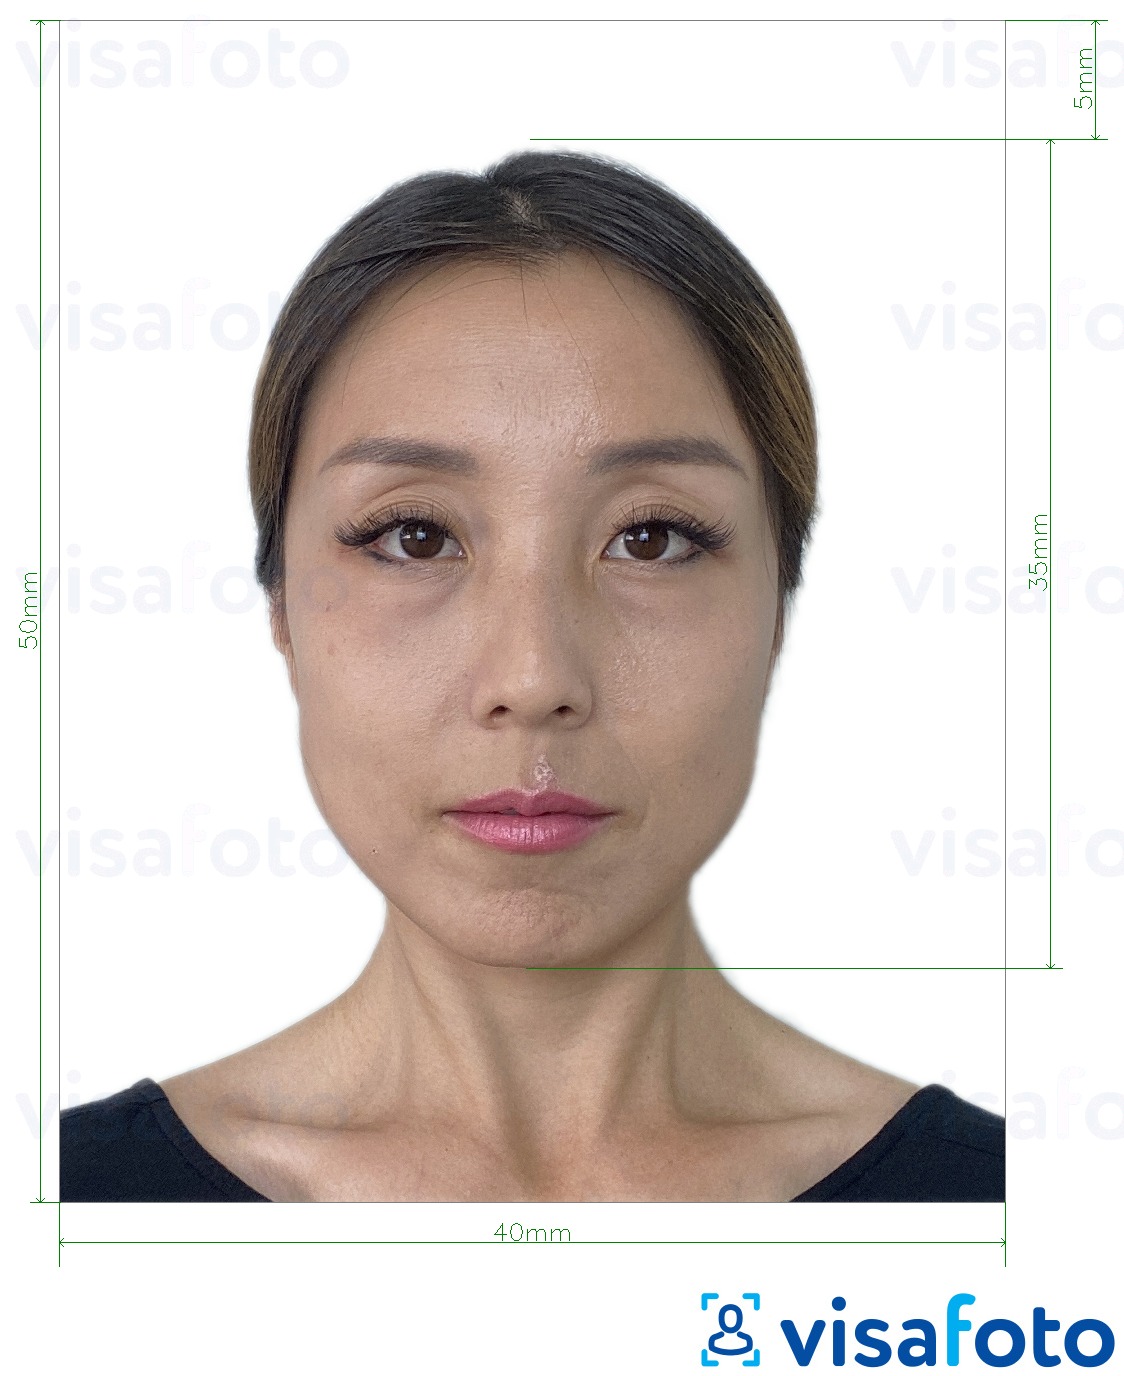 ფოტოს მაგალითი ჰონკონგი Visa 40x50 მმ (4x5 სმ) -სთვის ზუსტი ზომის სპეციფიკაციით